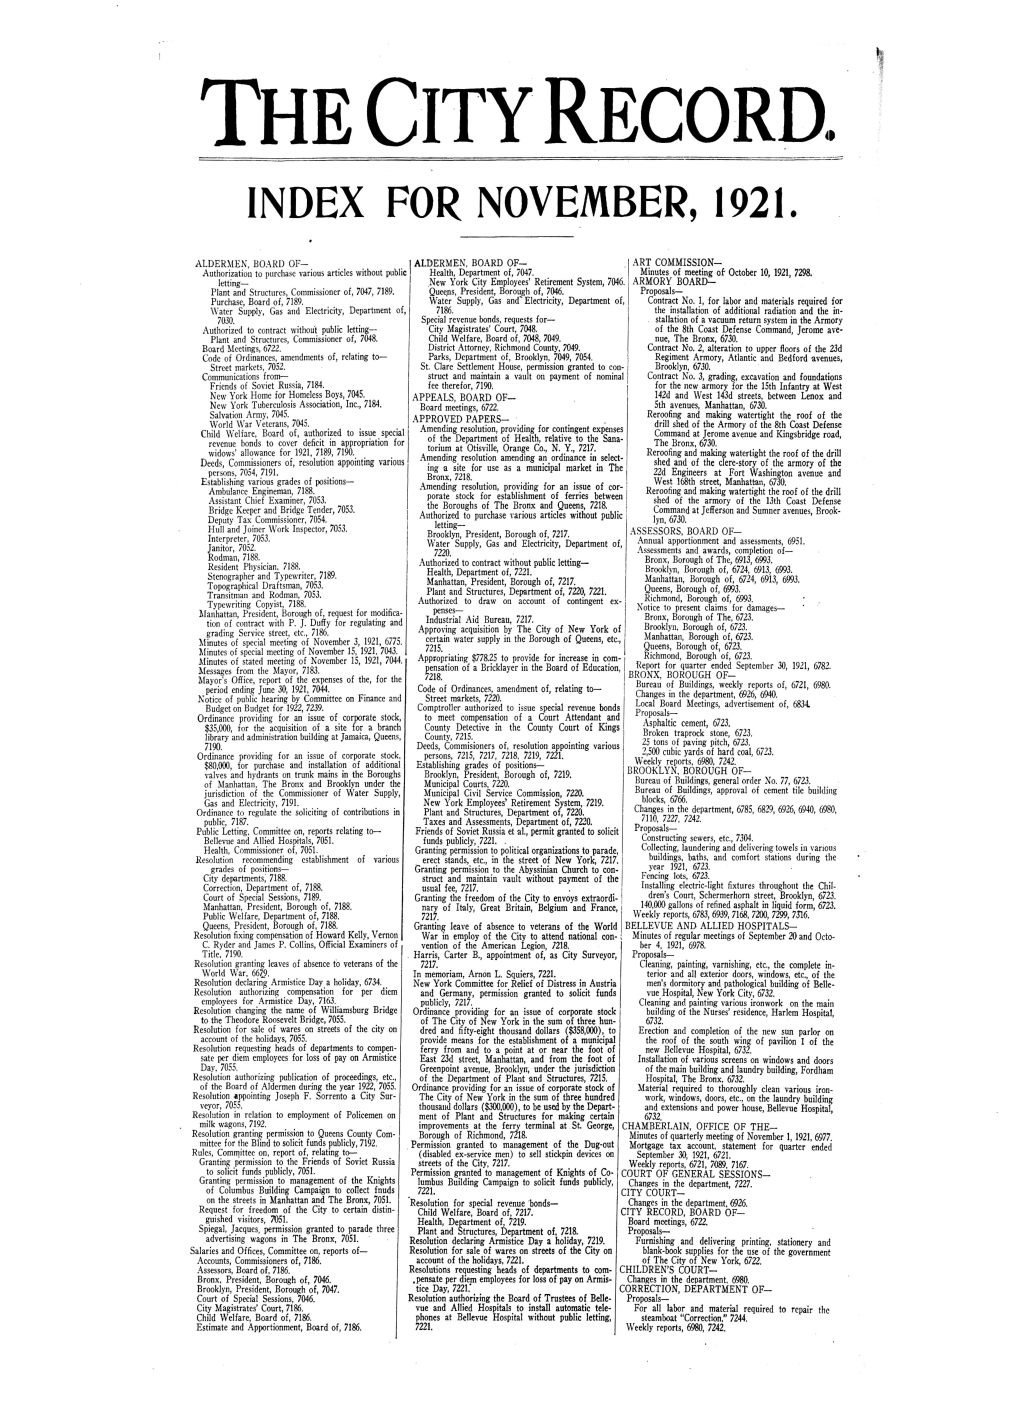 Index for November, 1921